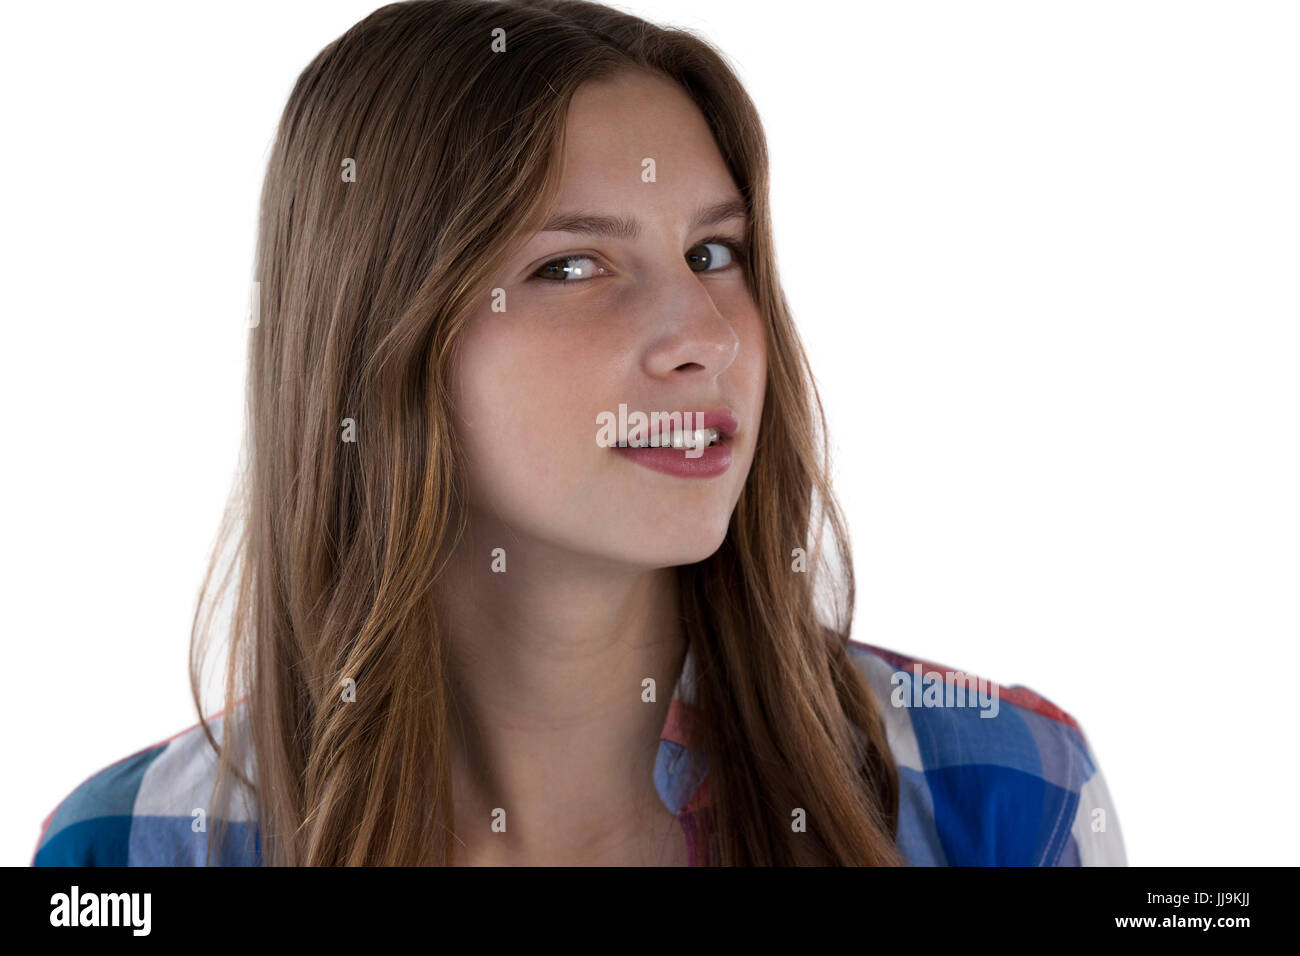 Ritratto di adolescente ragazza sorridente contro uno sfondo bianco Foto Stock